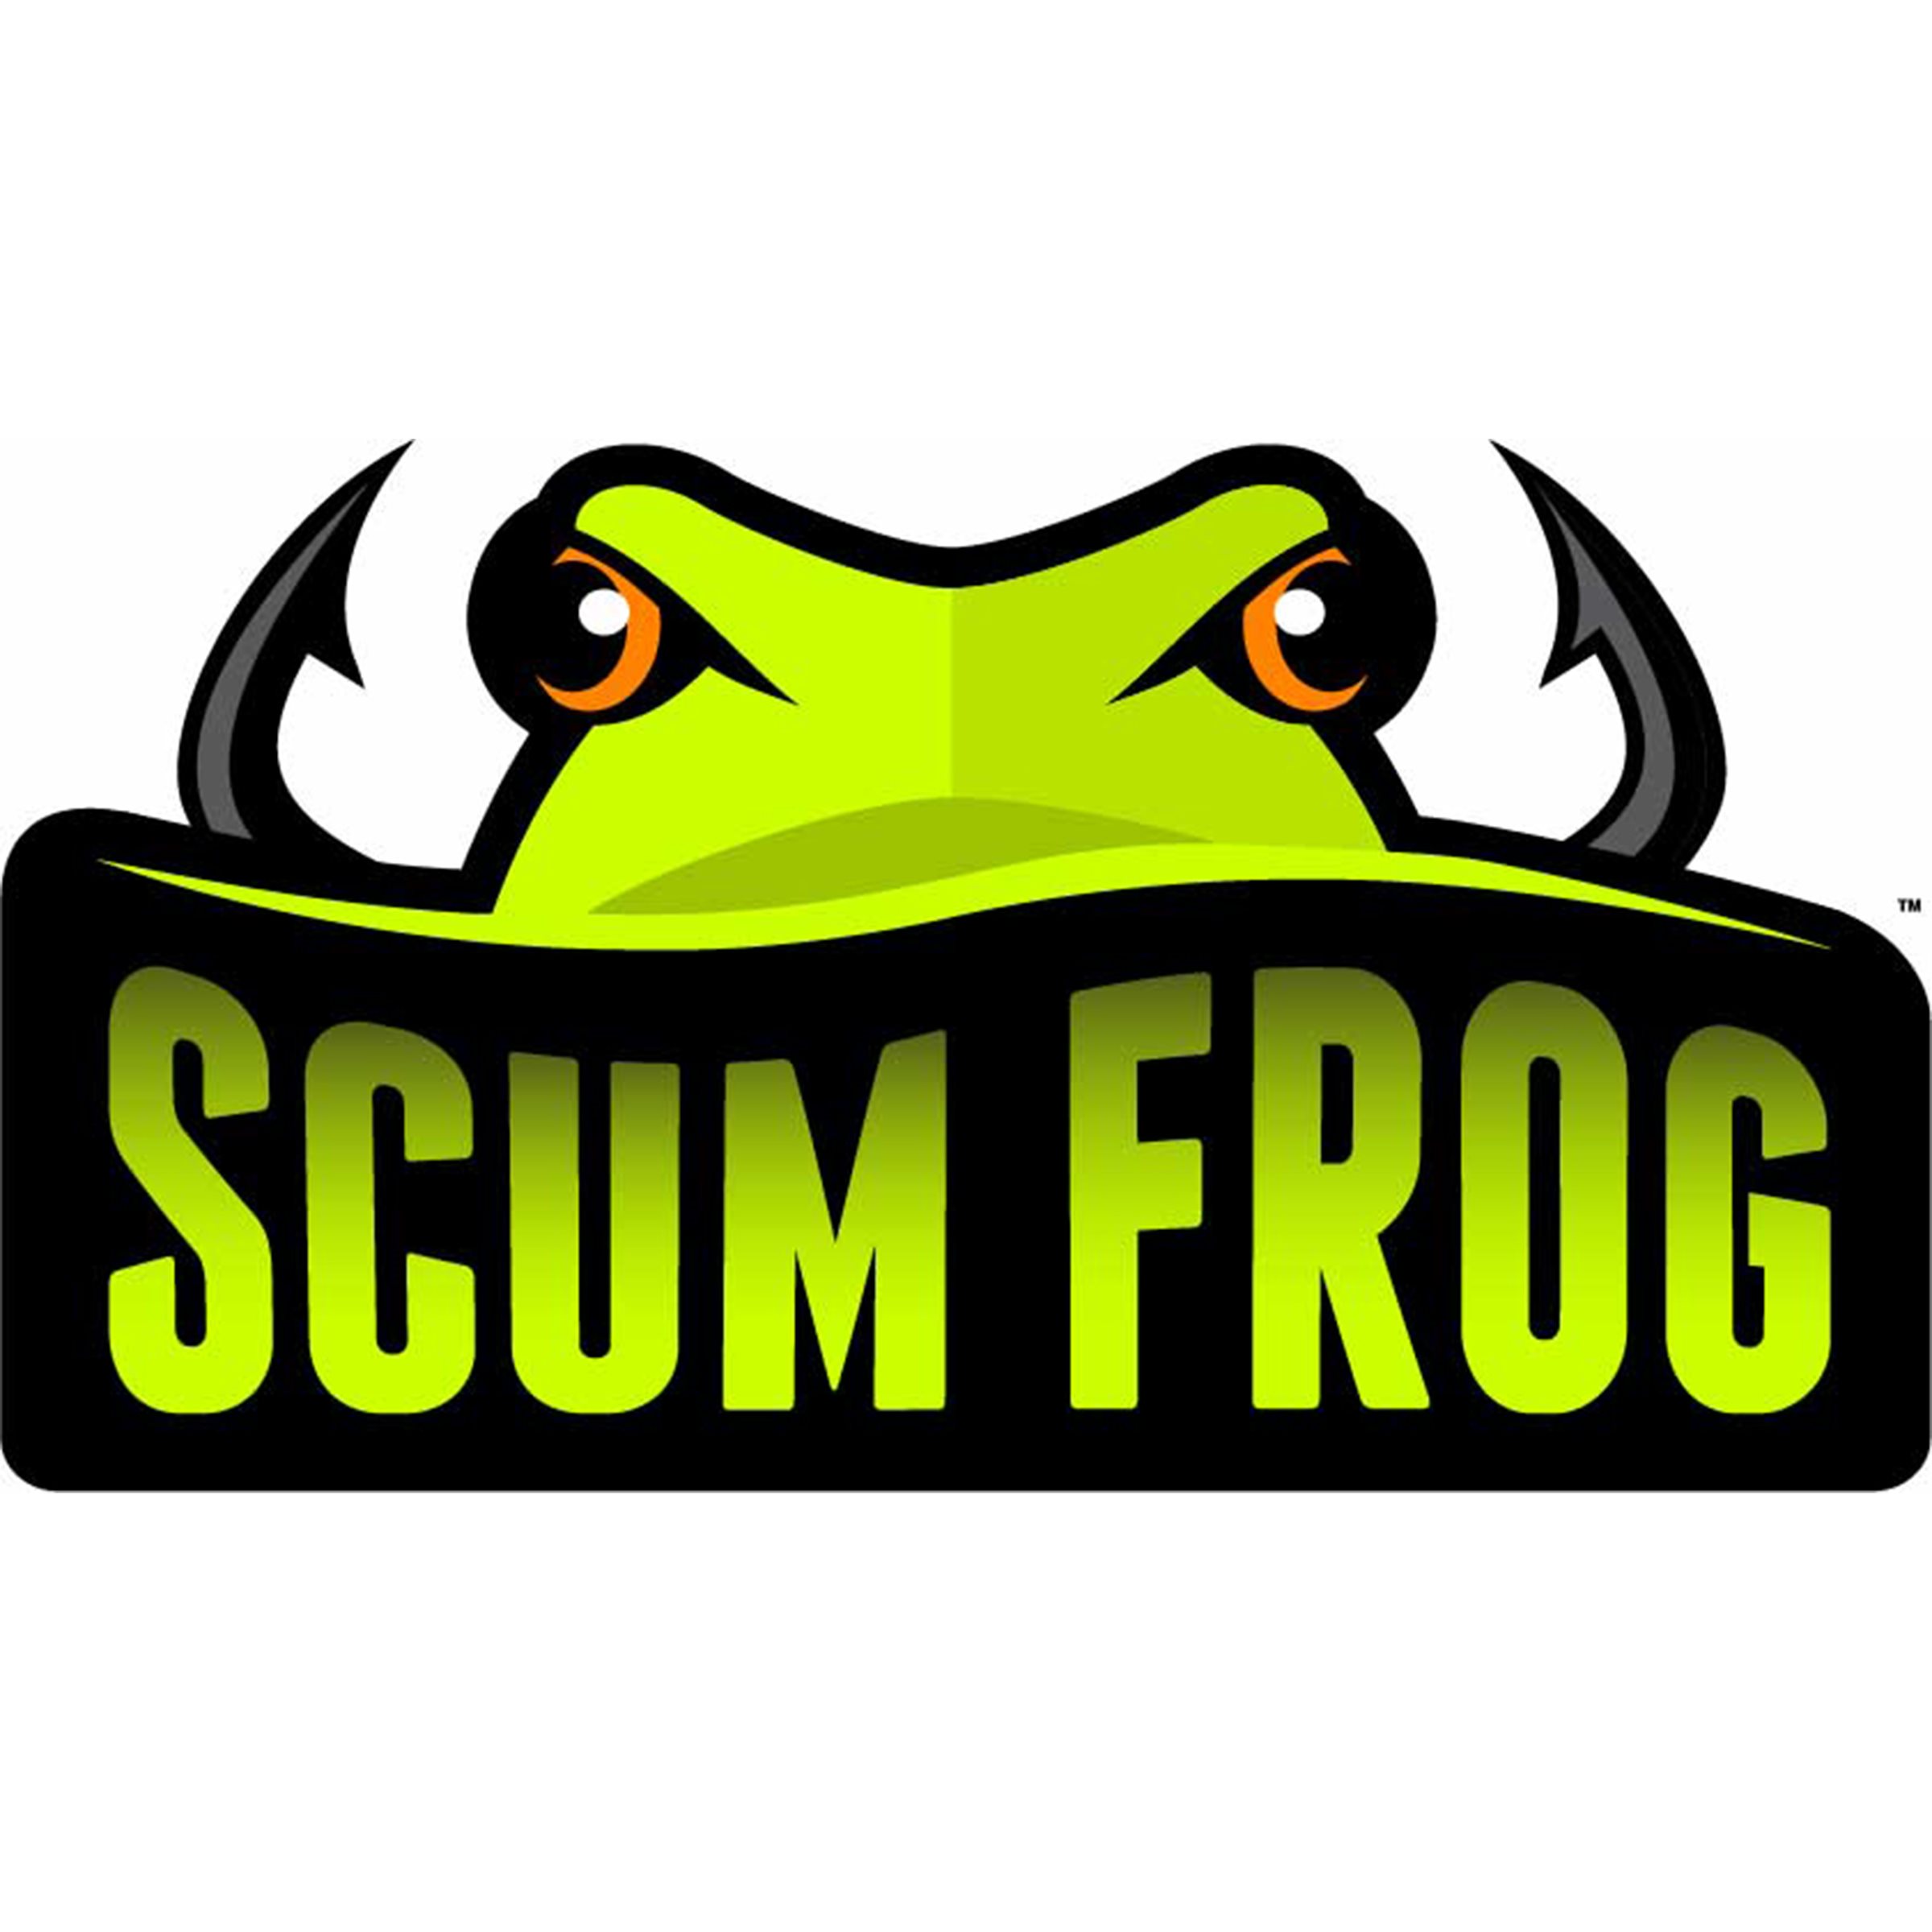 939-Scum Frog